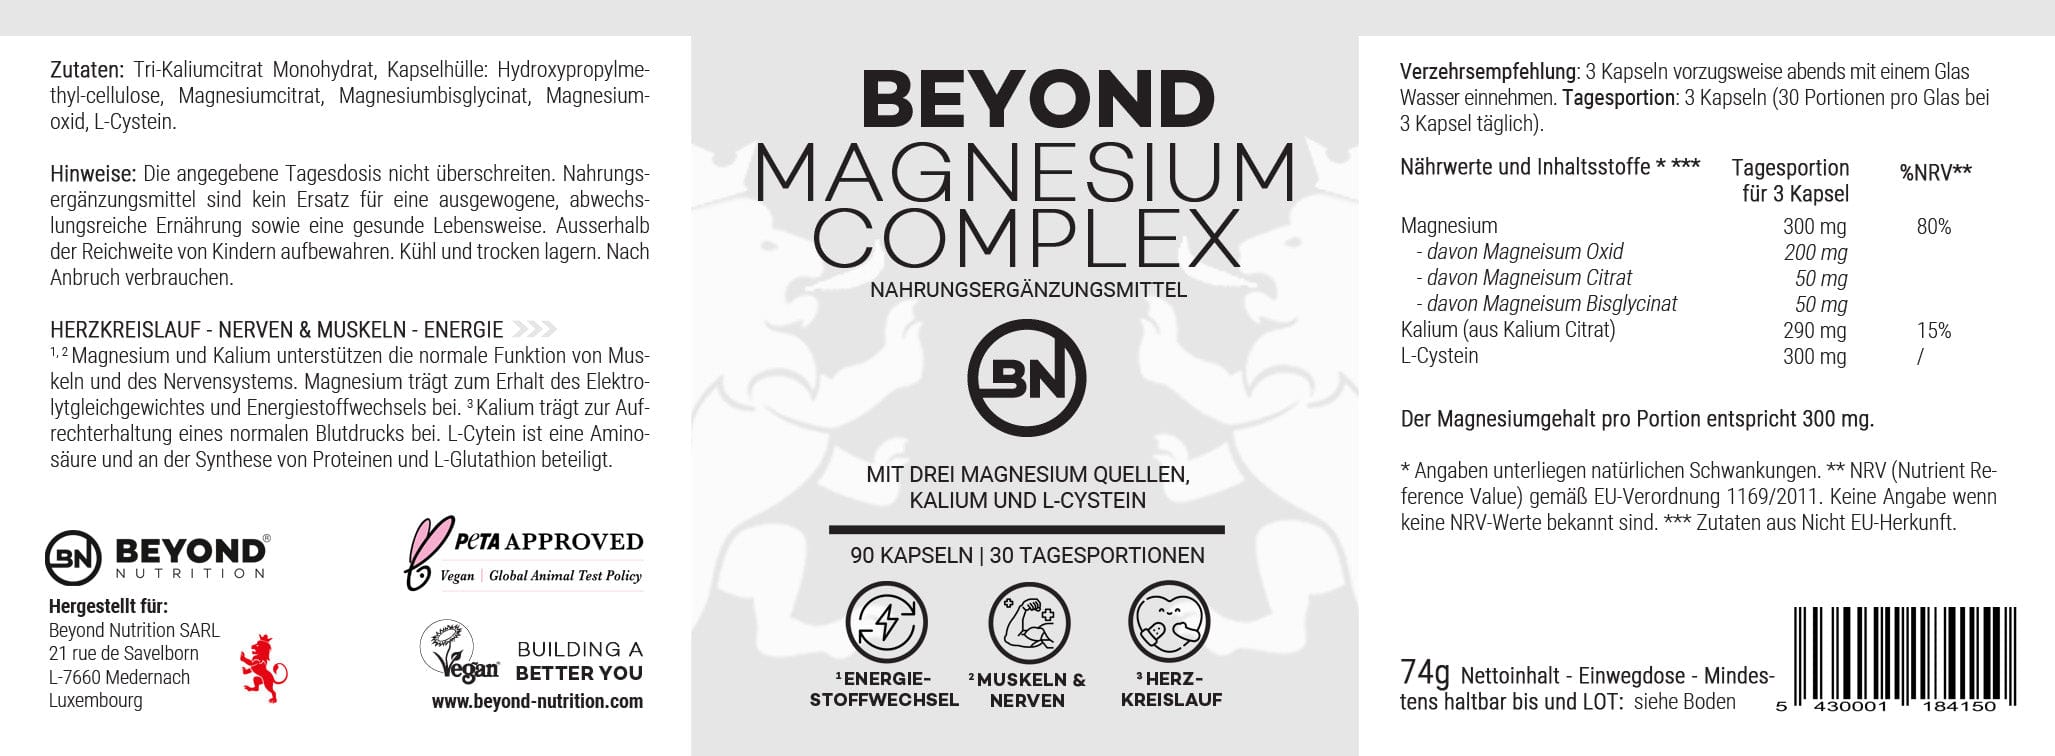 Beyond Nutrition - Beyond Magnesium Komplex mit Kalium und L-Cysteine - Nahrungsergänzungsmittel